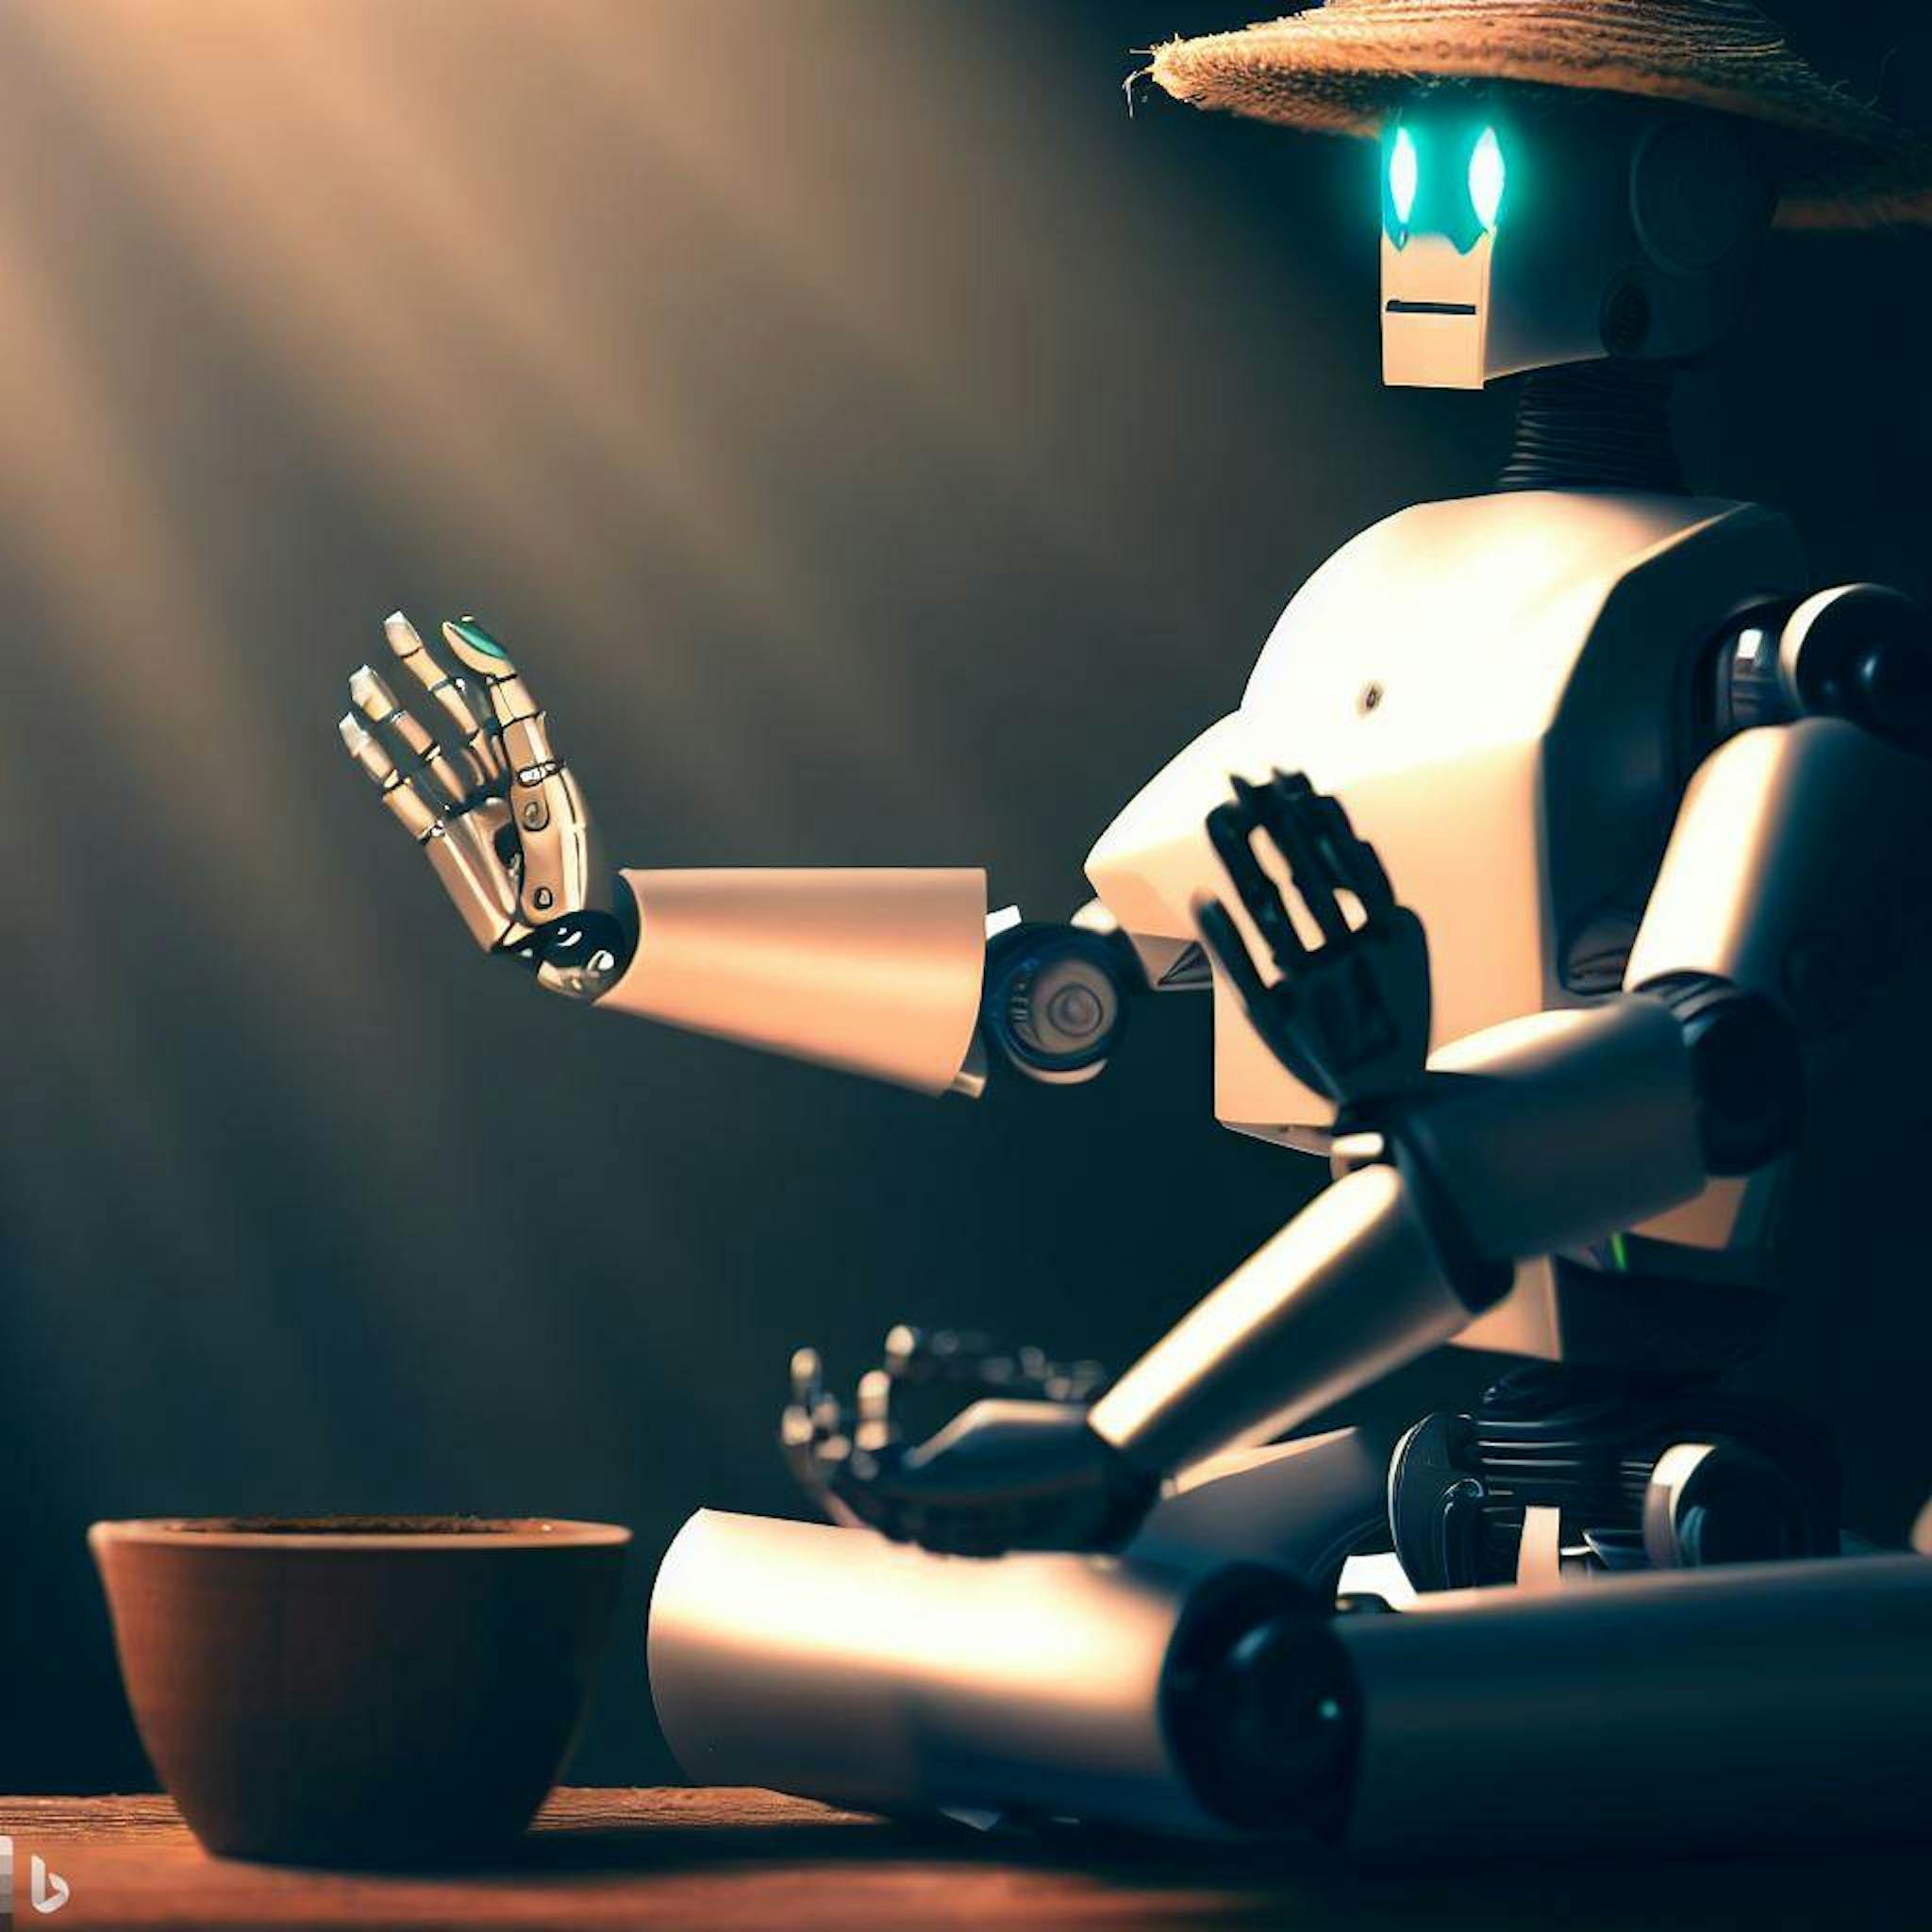  Robot Developing Spirituality